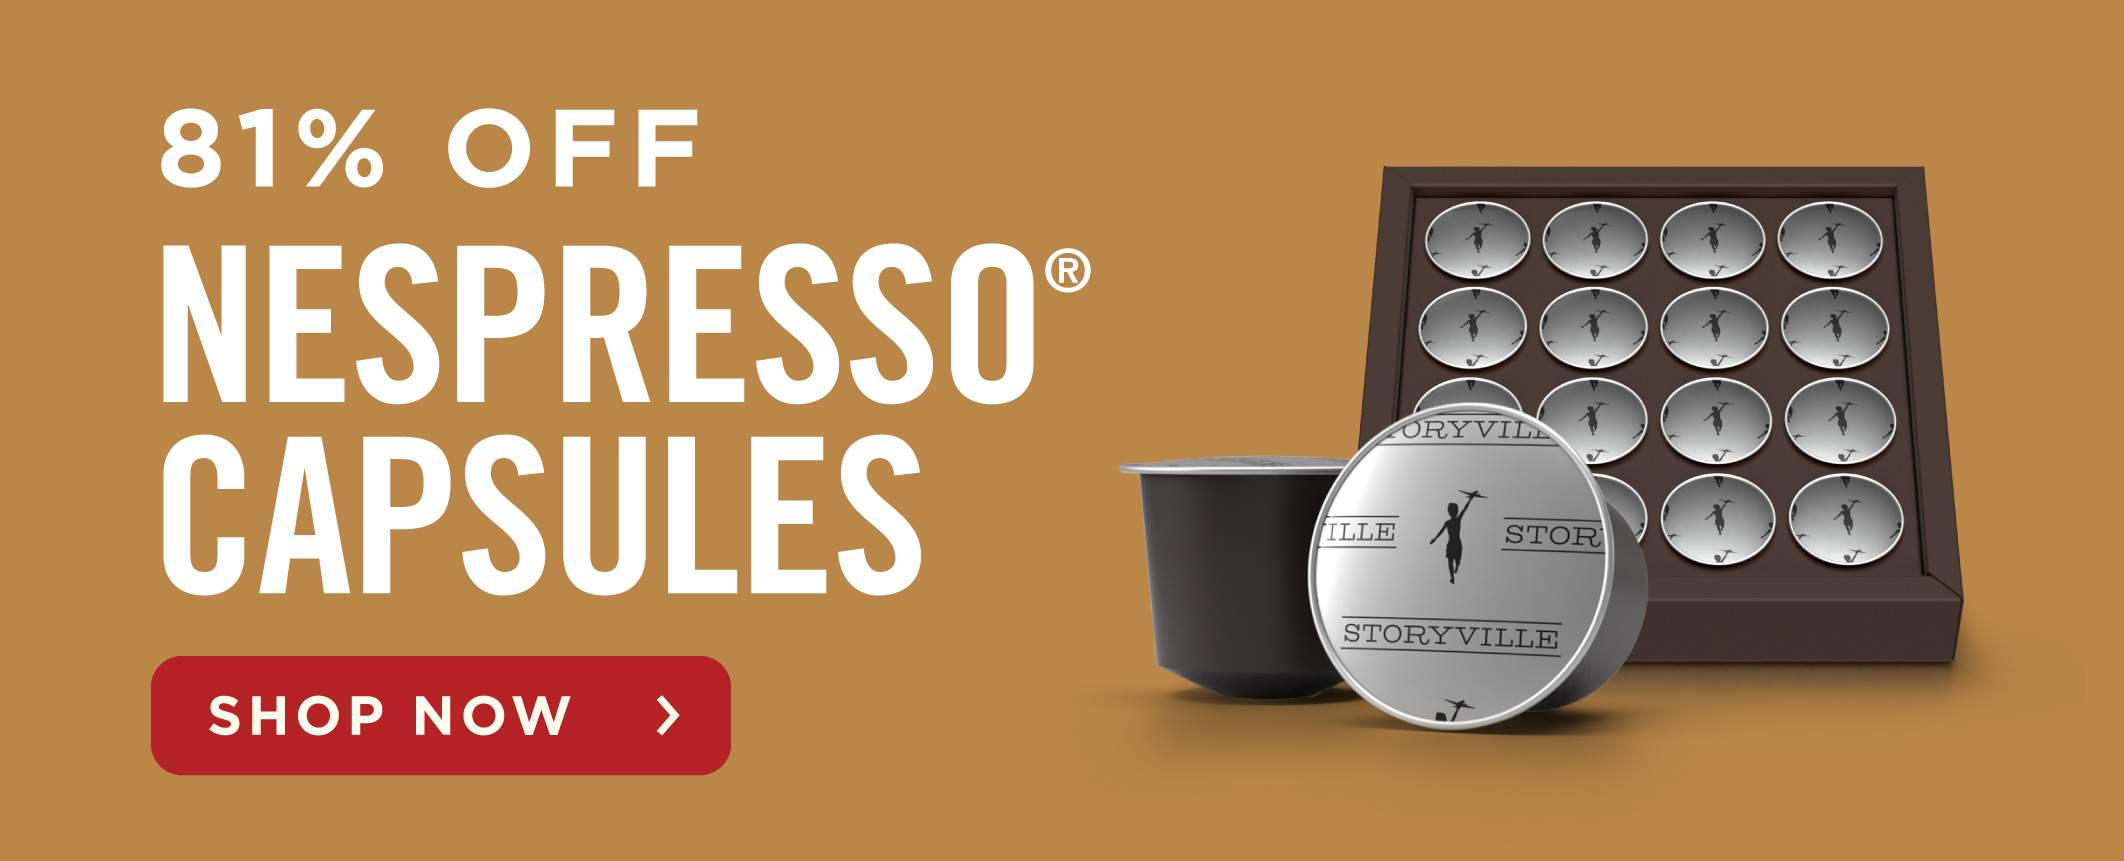 81% Off Nespresso? Capsules